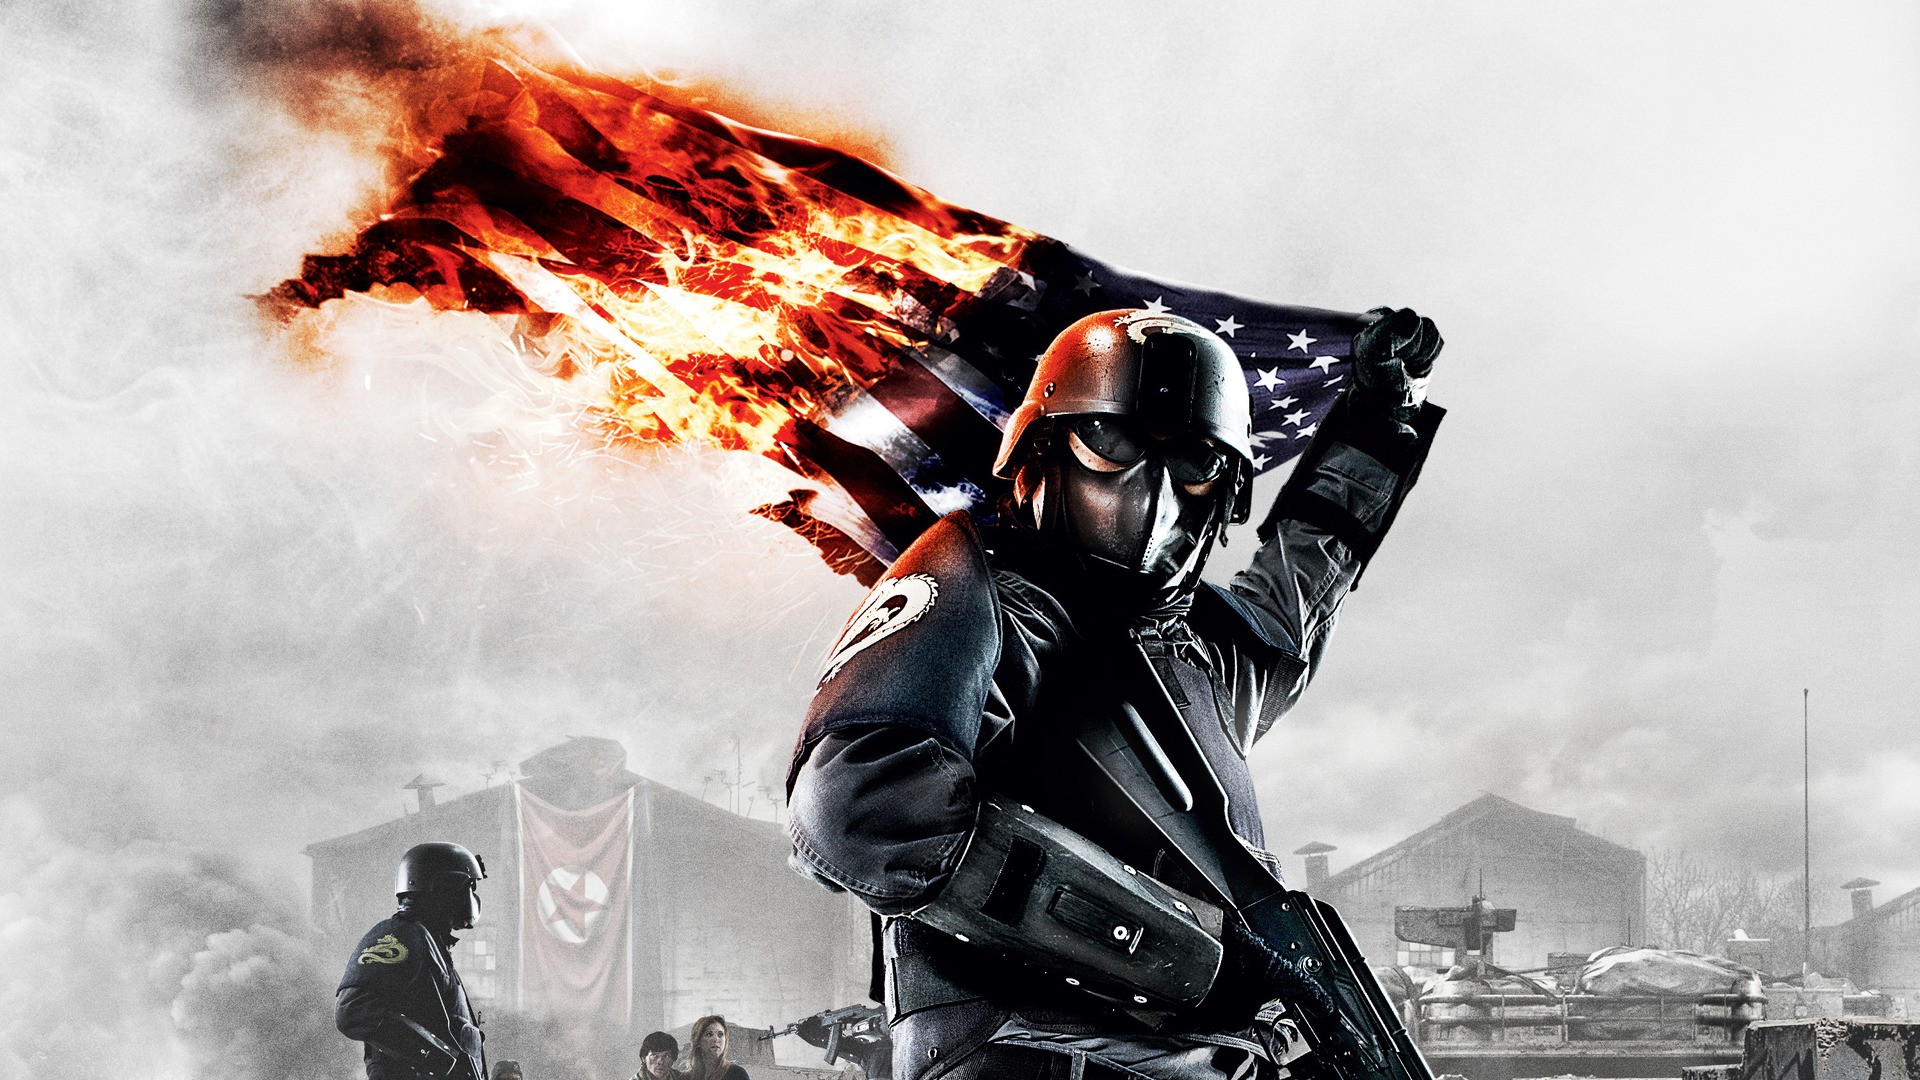 soldiers, video games, fire, helmet, flags, Homefront - desktop wallpaper